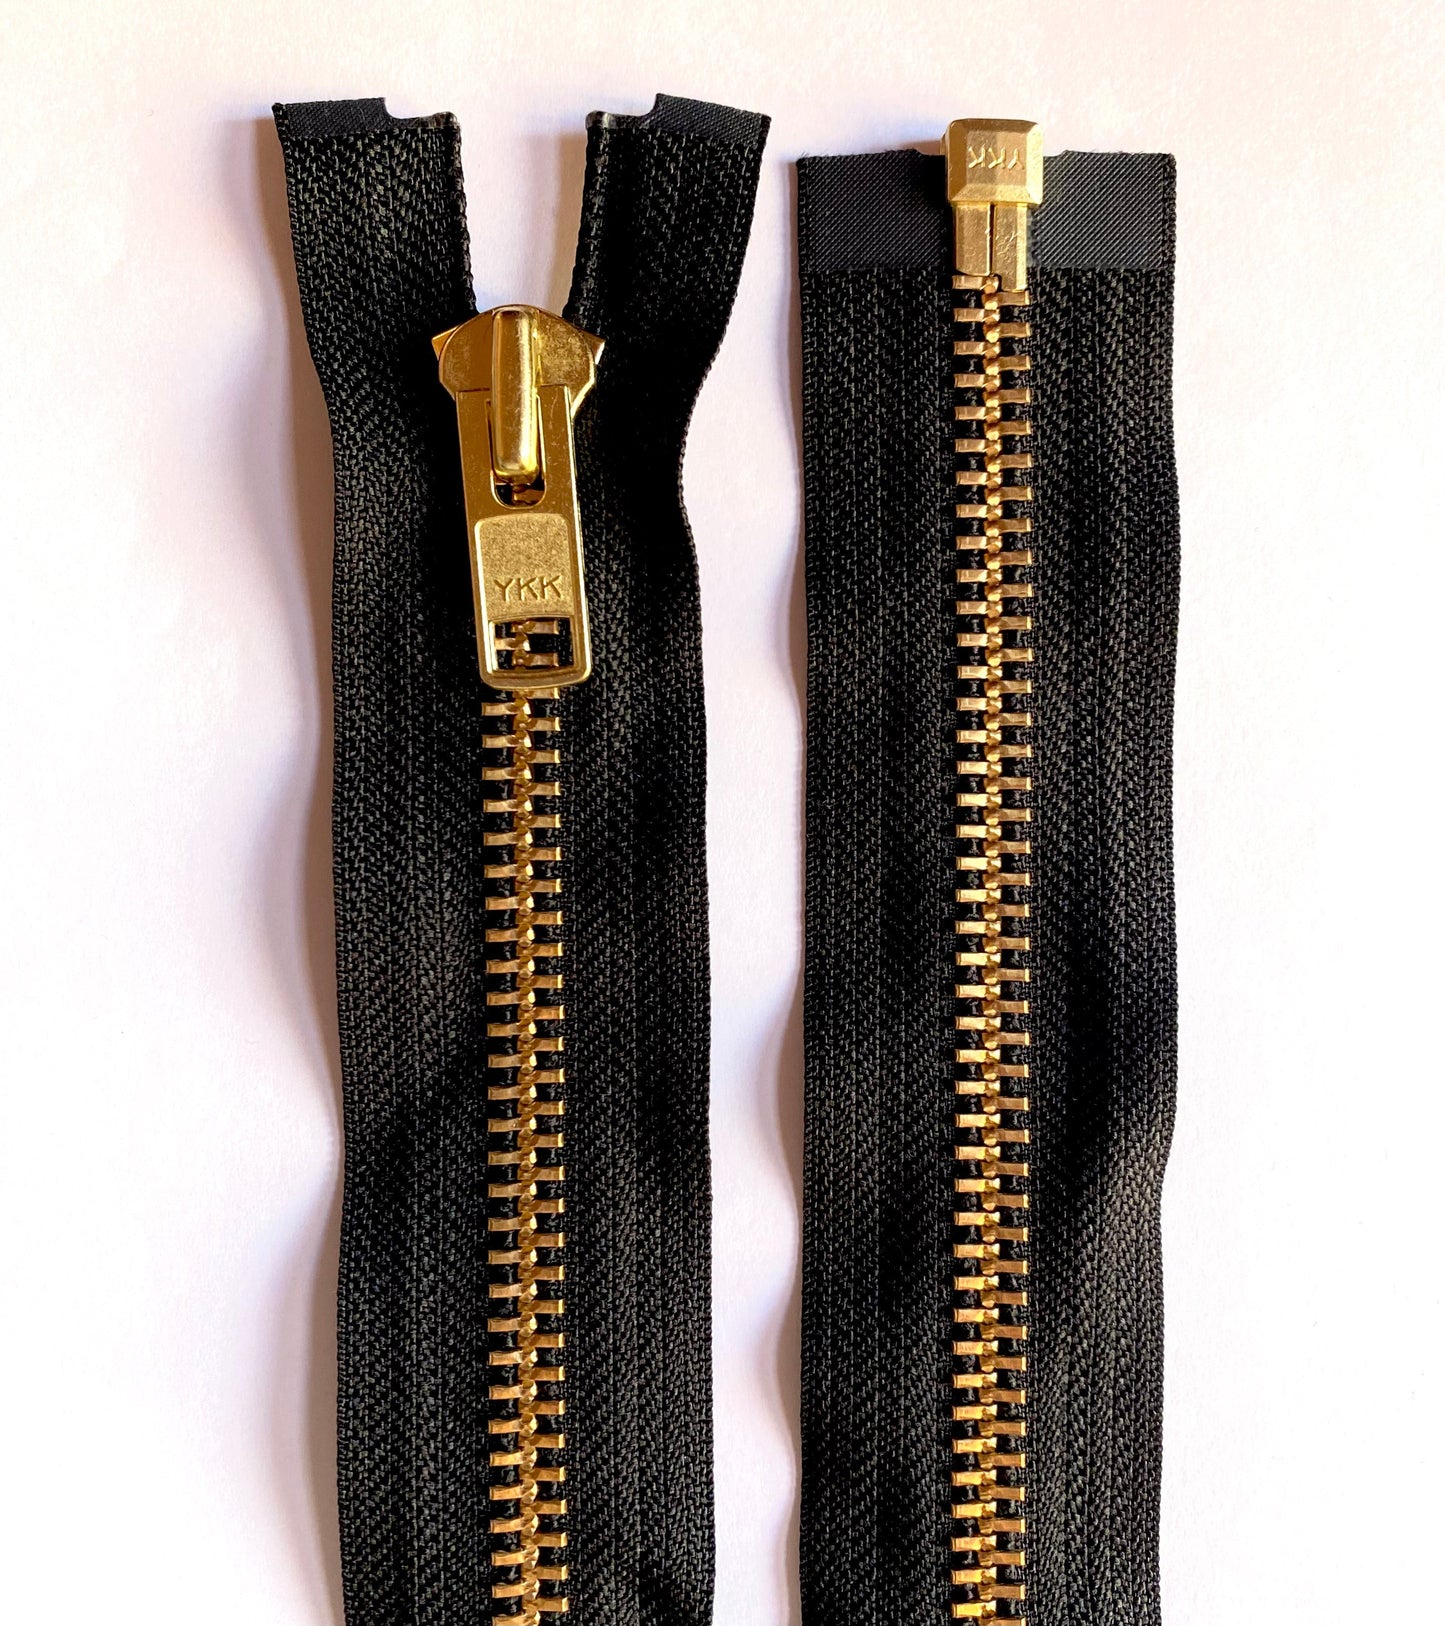 YKK metal zipper divisible 75 cm